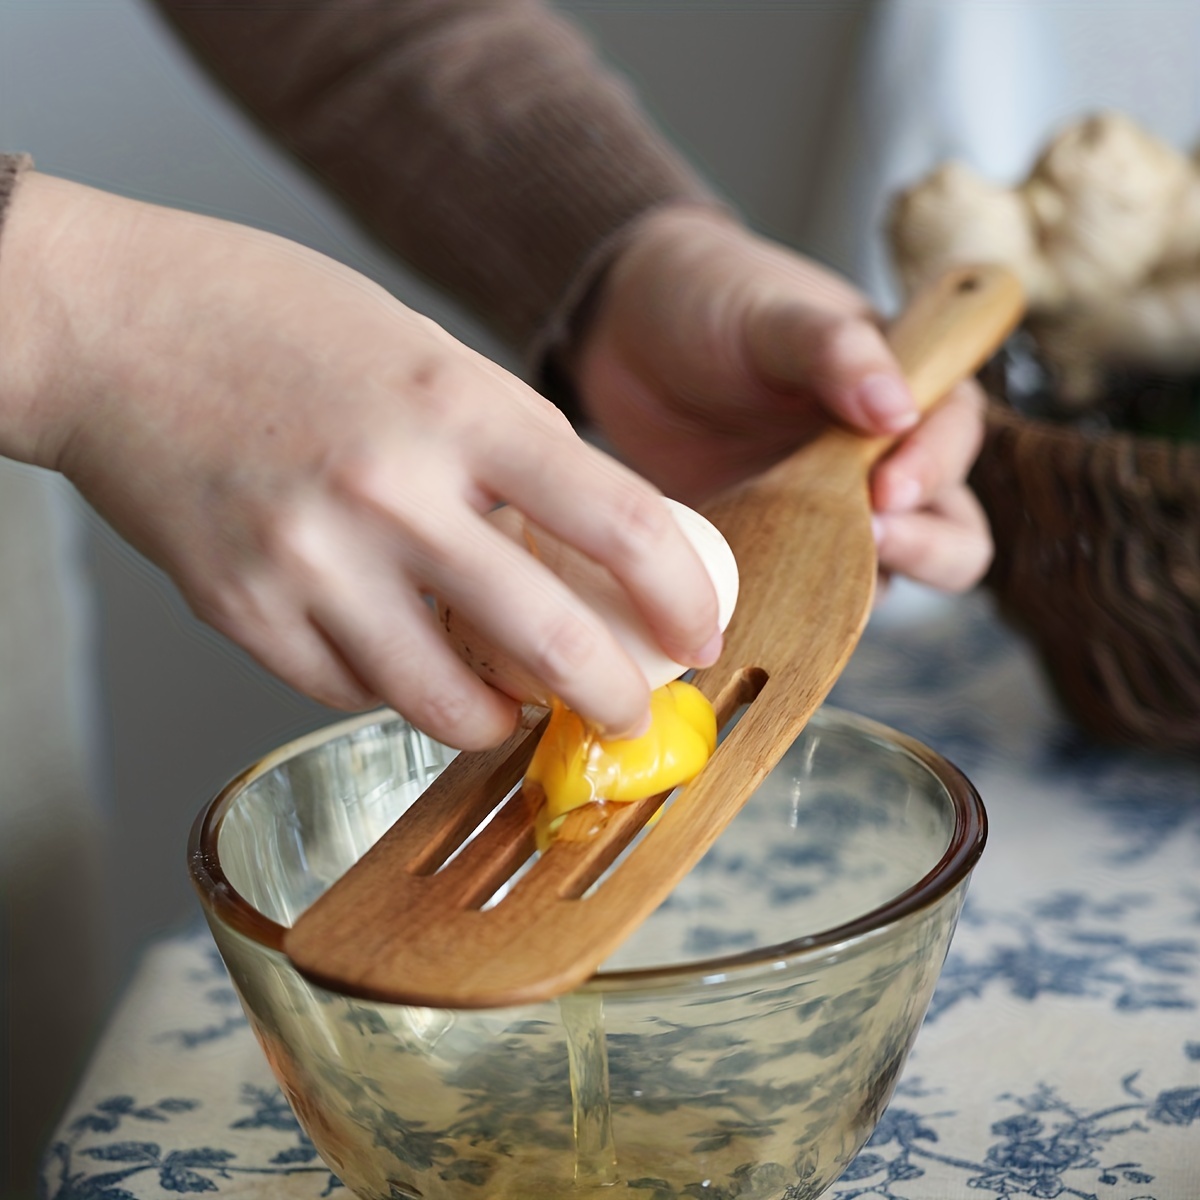  KITEISCAT Cucharas de madera de acacia para cocinar: juego de  utensilios de cocina y cocina de 5 piezas - espátula de madera, cuchara  ranurada y para pasta - Juego de utensilios